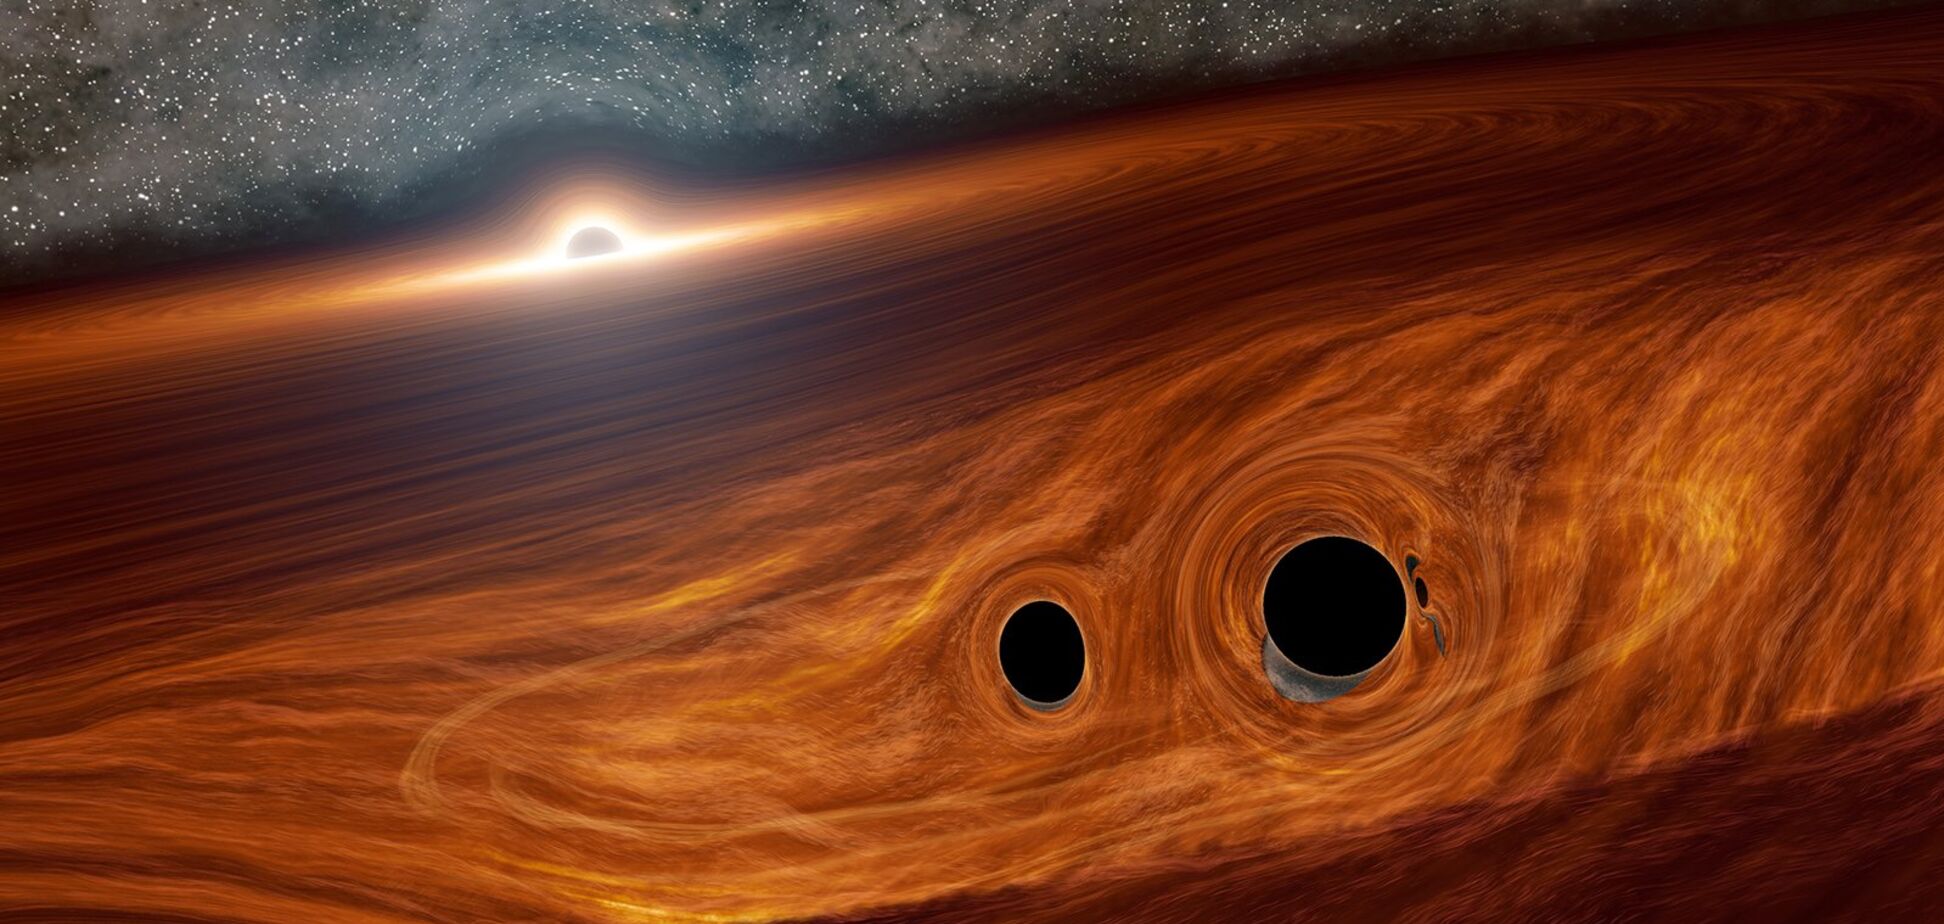 Астрономы рассказали об 'аппетитах' одной из самых больших черных дыр: способна поглотить Солнце за день